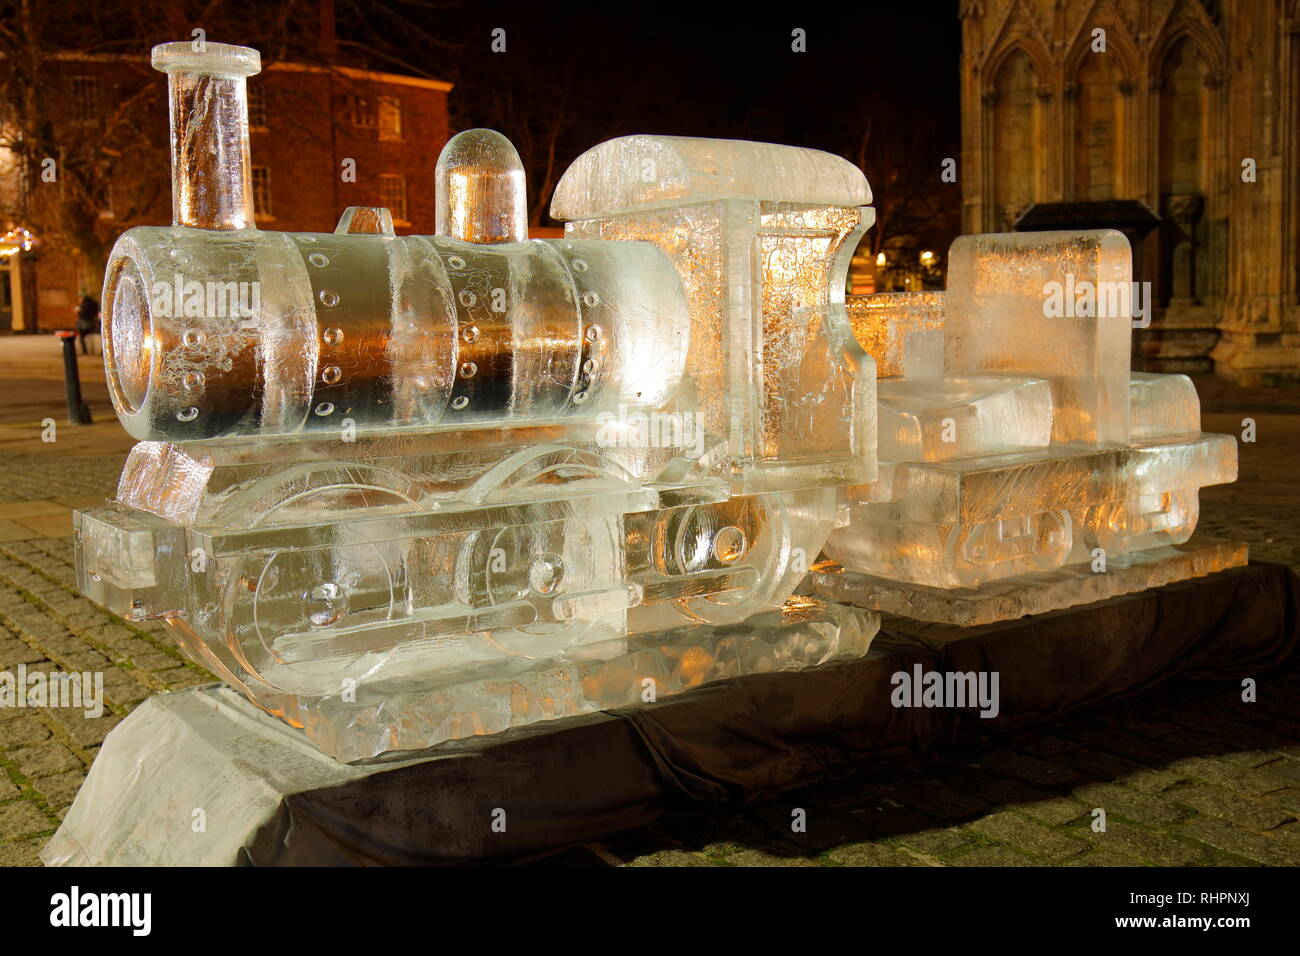 Un train à vapeur sculpture de glace à l'extérieur de la cathédrale de York, qui fait partie de la glace de New York Sculpture Trail. Banque D'Images